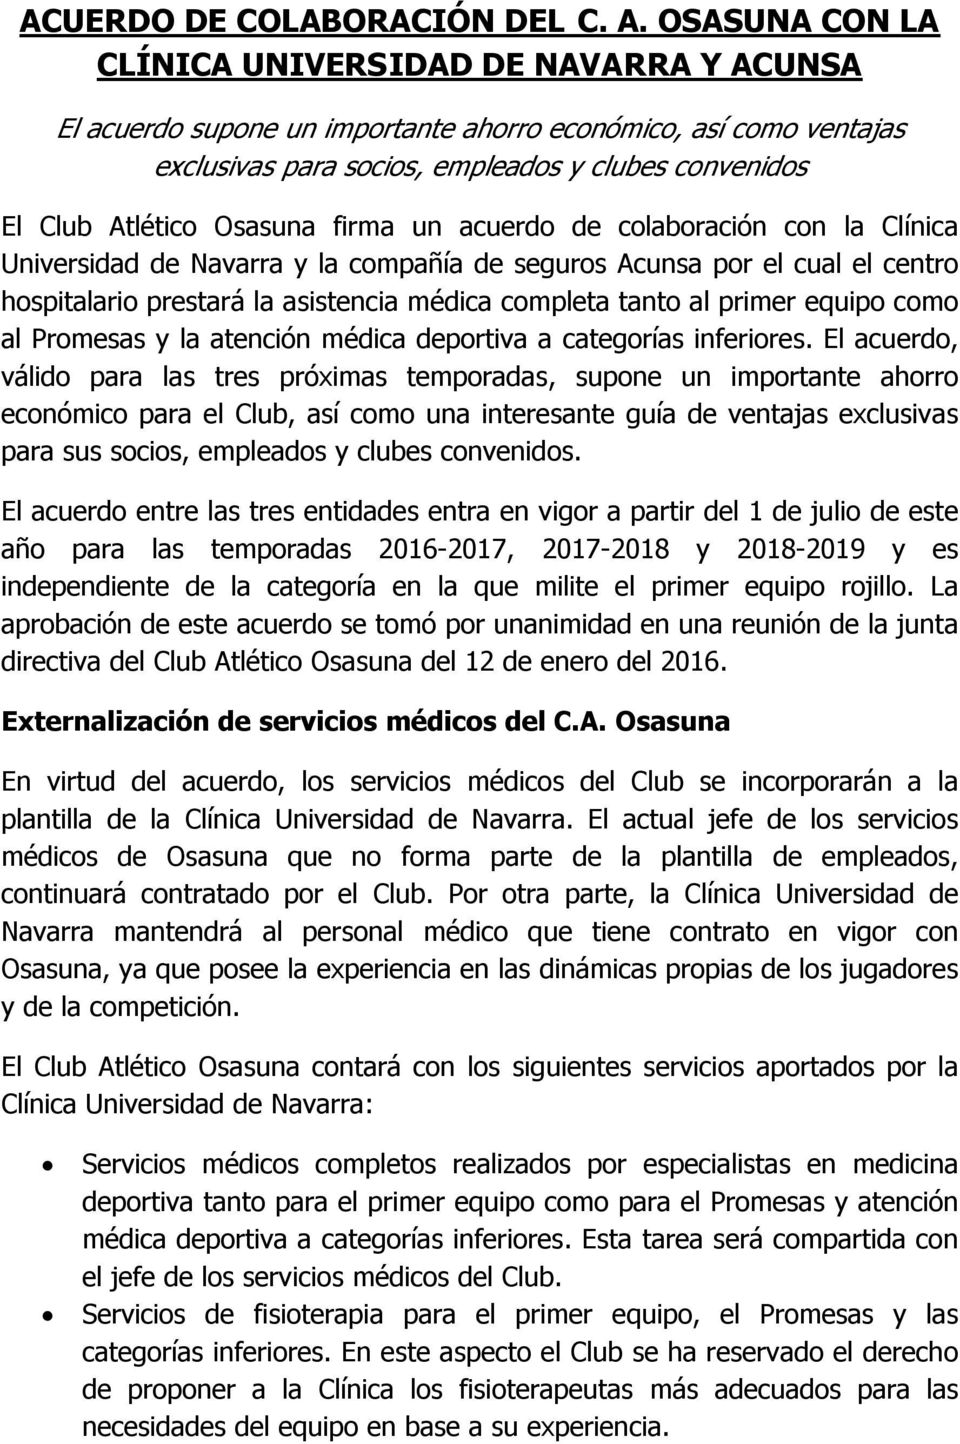 Osasuna firma un acuerdo de colaboración con la Clínica Universidad de Navarra y la compañía de seguros Acunsa por el cual el centro hospitalario prestará la asistencia médica completa tanto al